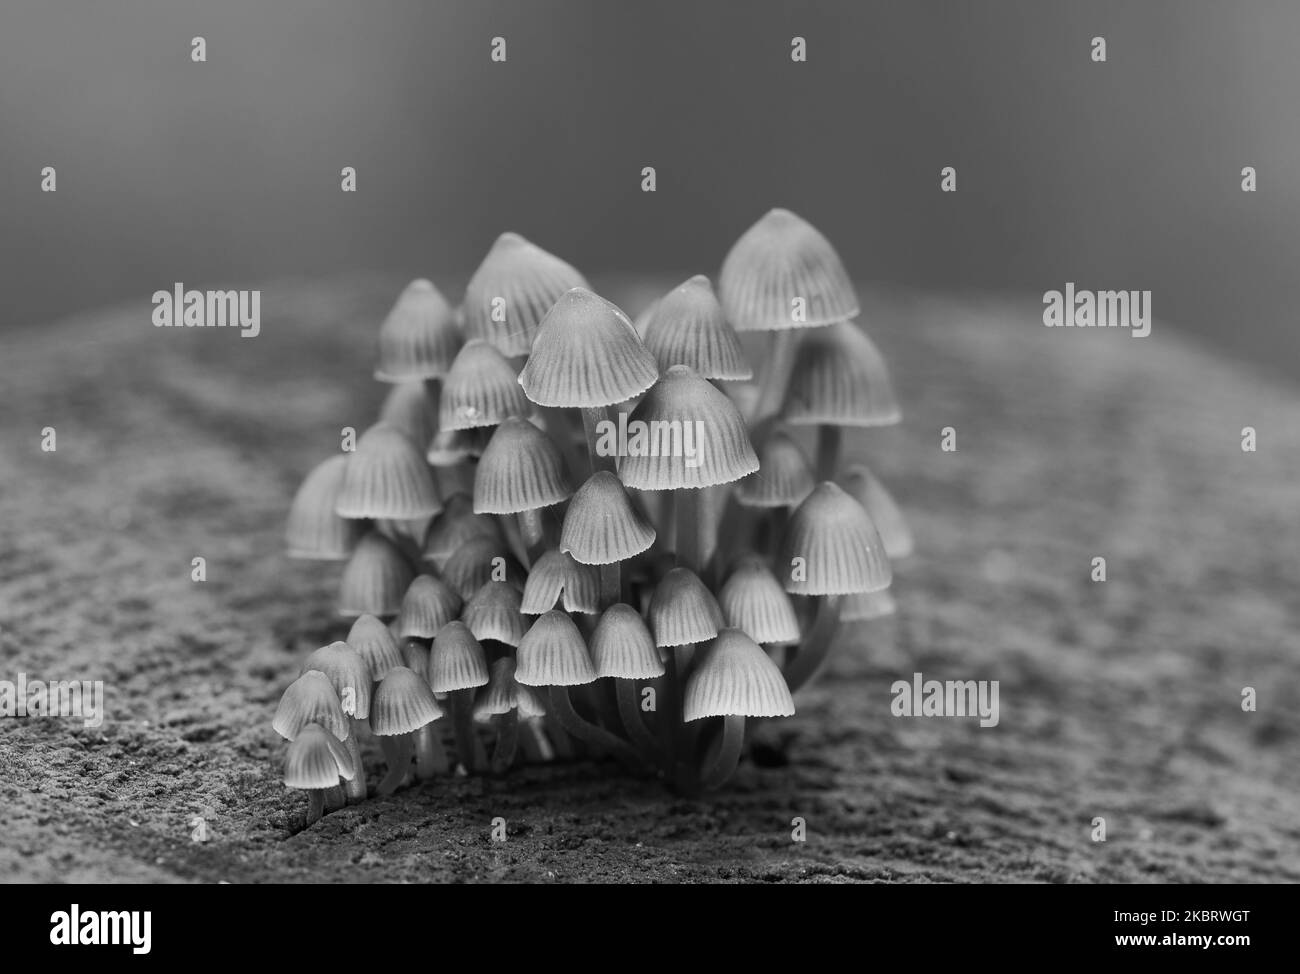 Viele Pilze auf einem Baumstamm in schwarz-weißer Farbe, grauer Hintergrund Stockfoto